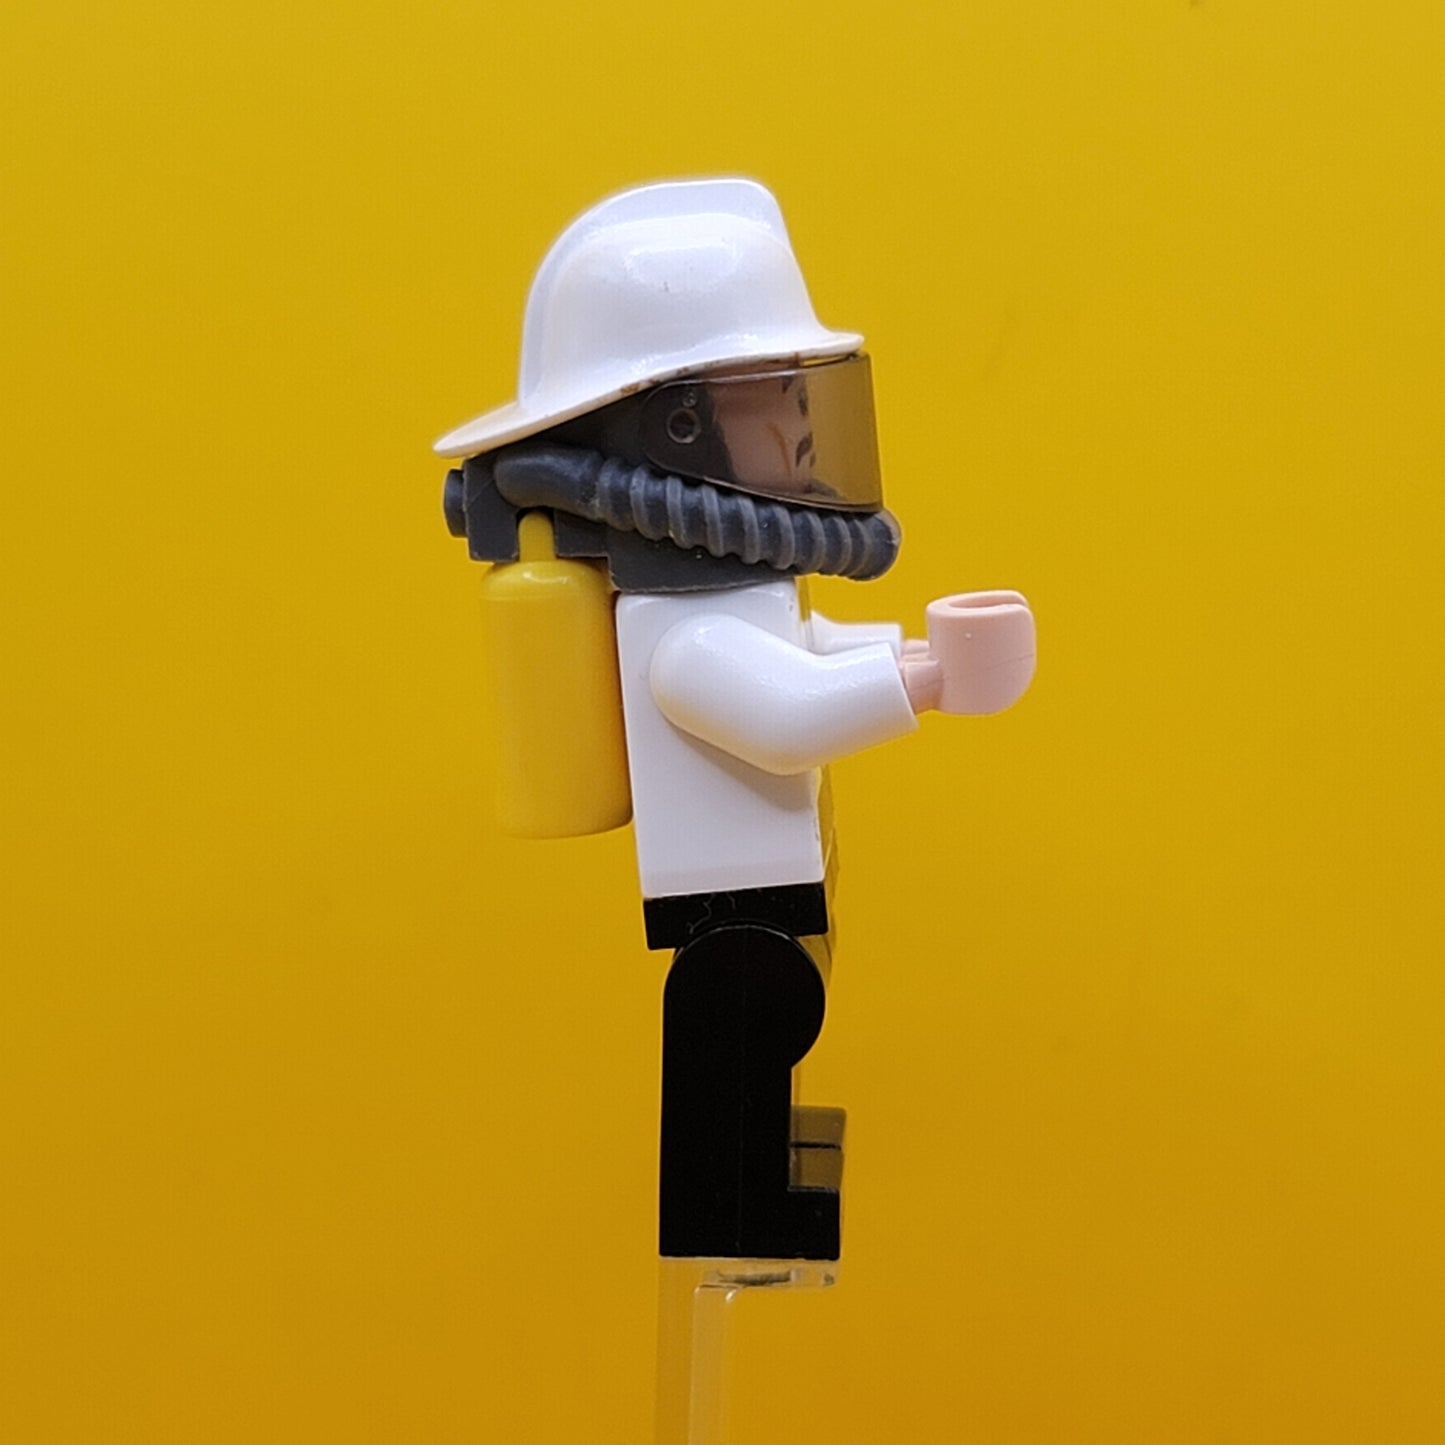 Security Guard Fire Helmet Minifigure Lego sh320